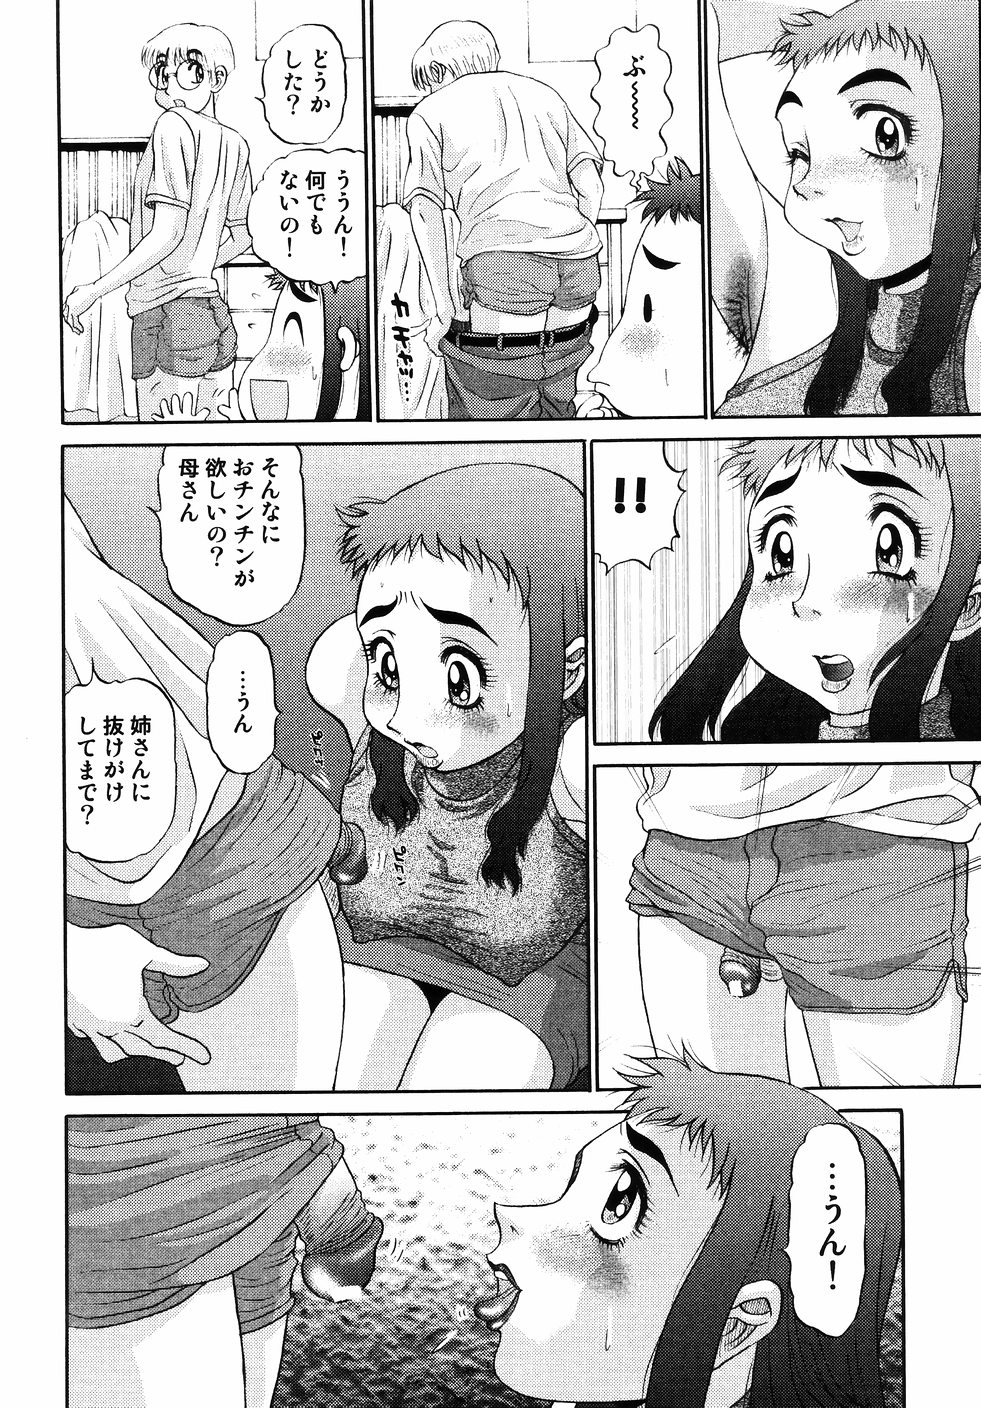 [PJ-1] Nozomi 2 page 44 full